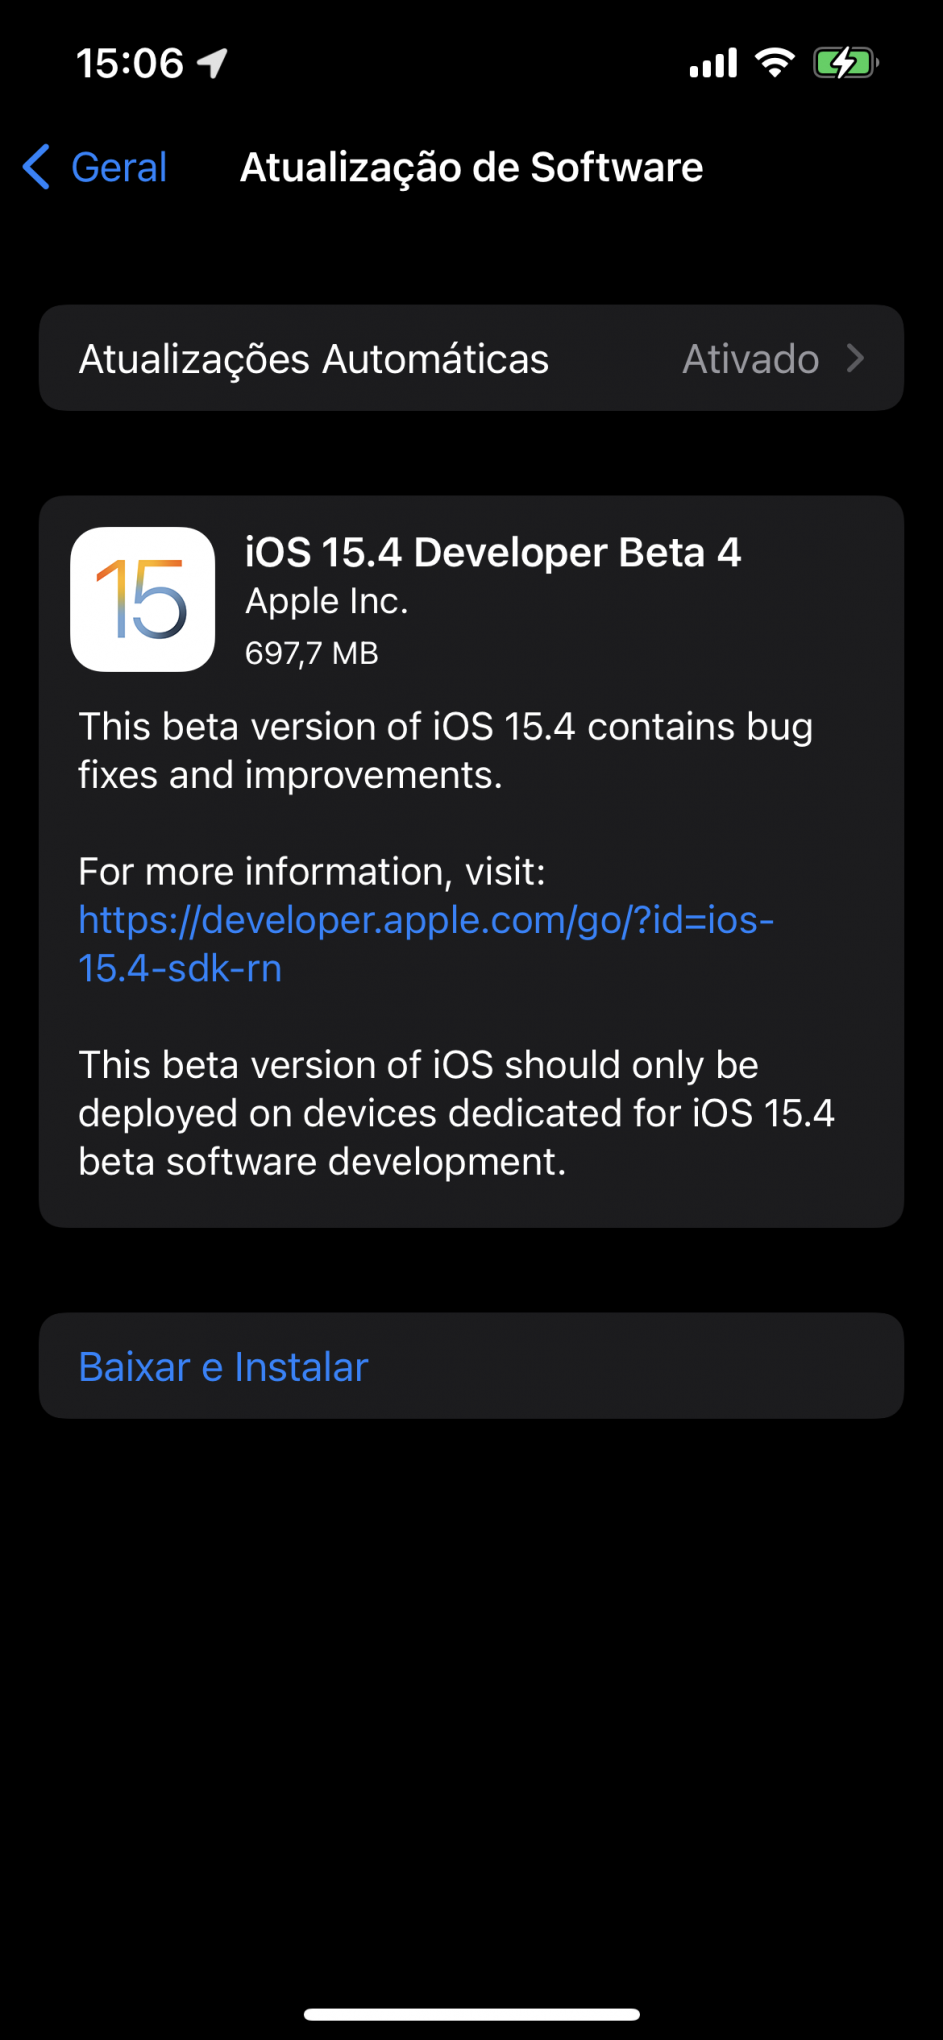 iOS 15.4 beta 4 รุ่นใหม่ของวันนี้พร้อมให้นักพัฒนาใช้งานผ่านการอัปเดตแบบ over-the-air